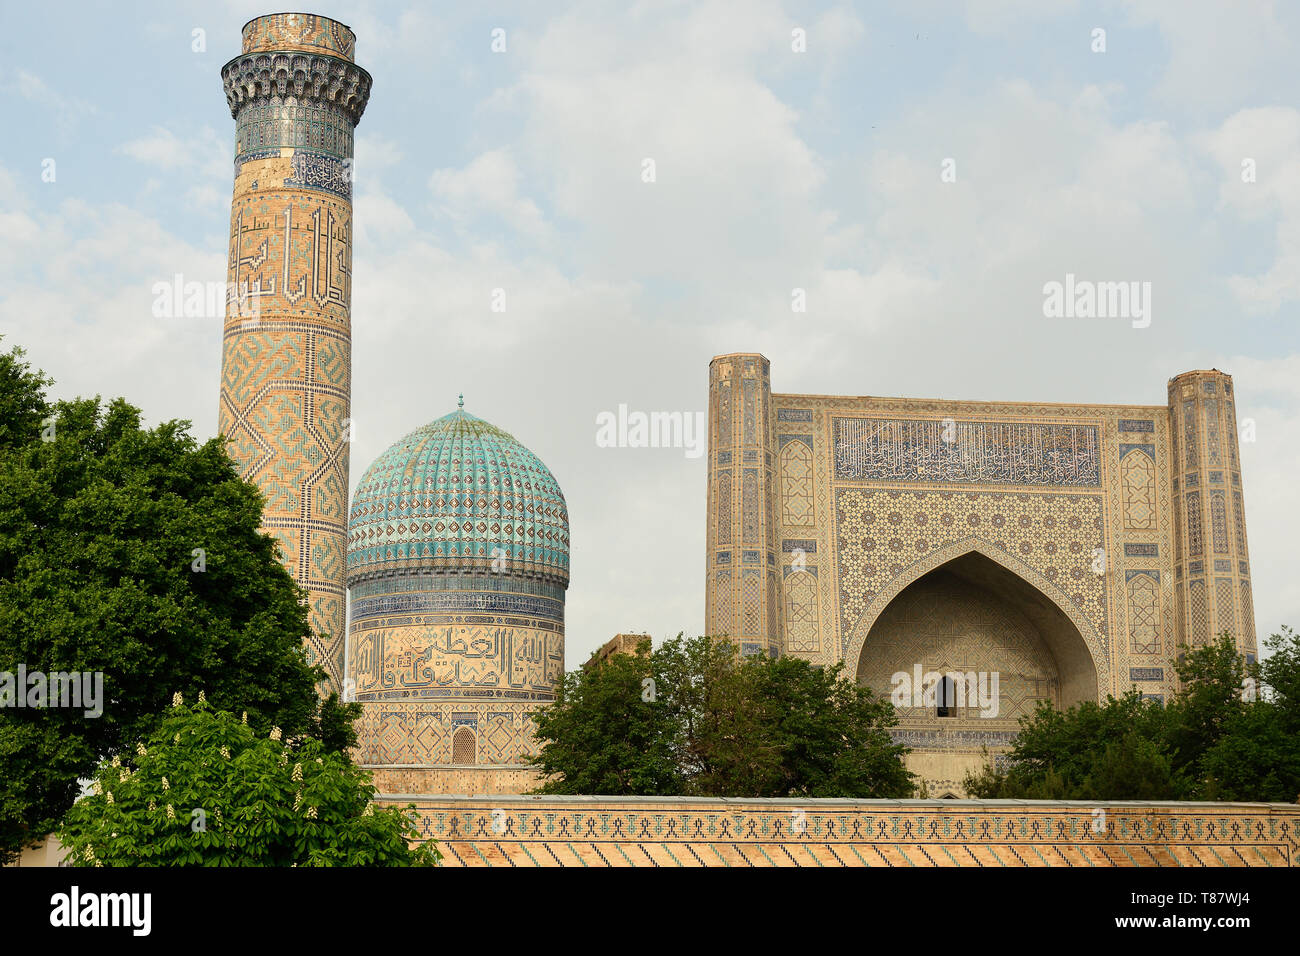 Vue sur la mosquée Bibi-Khanym, l'une des plus grandes mosquées du monde musulman, construit par Timur en 15ème siècle, Samarkand, Ouzbékistan Banque D'Images